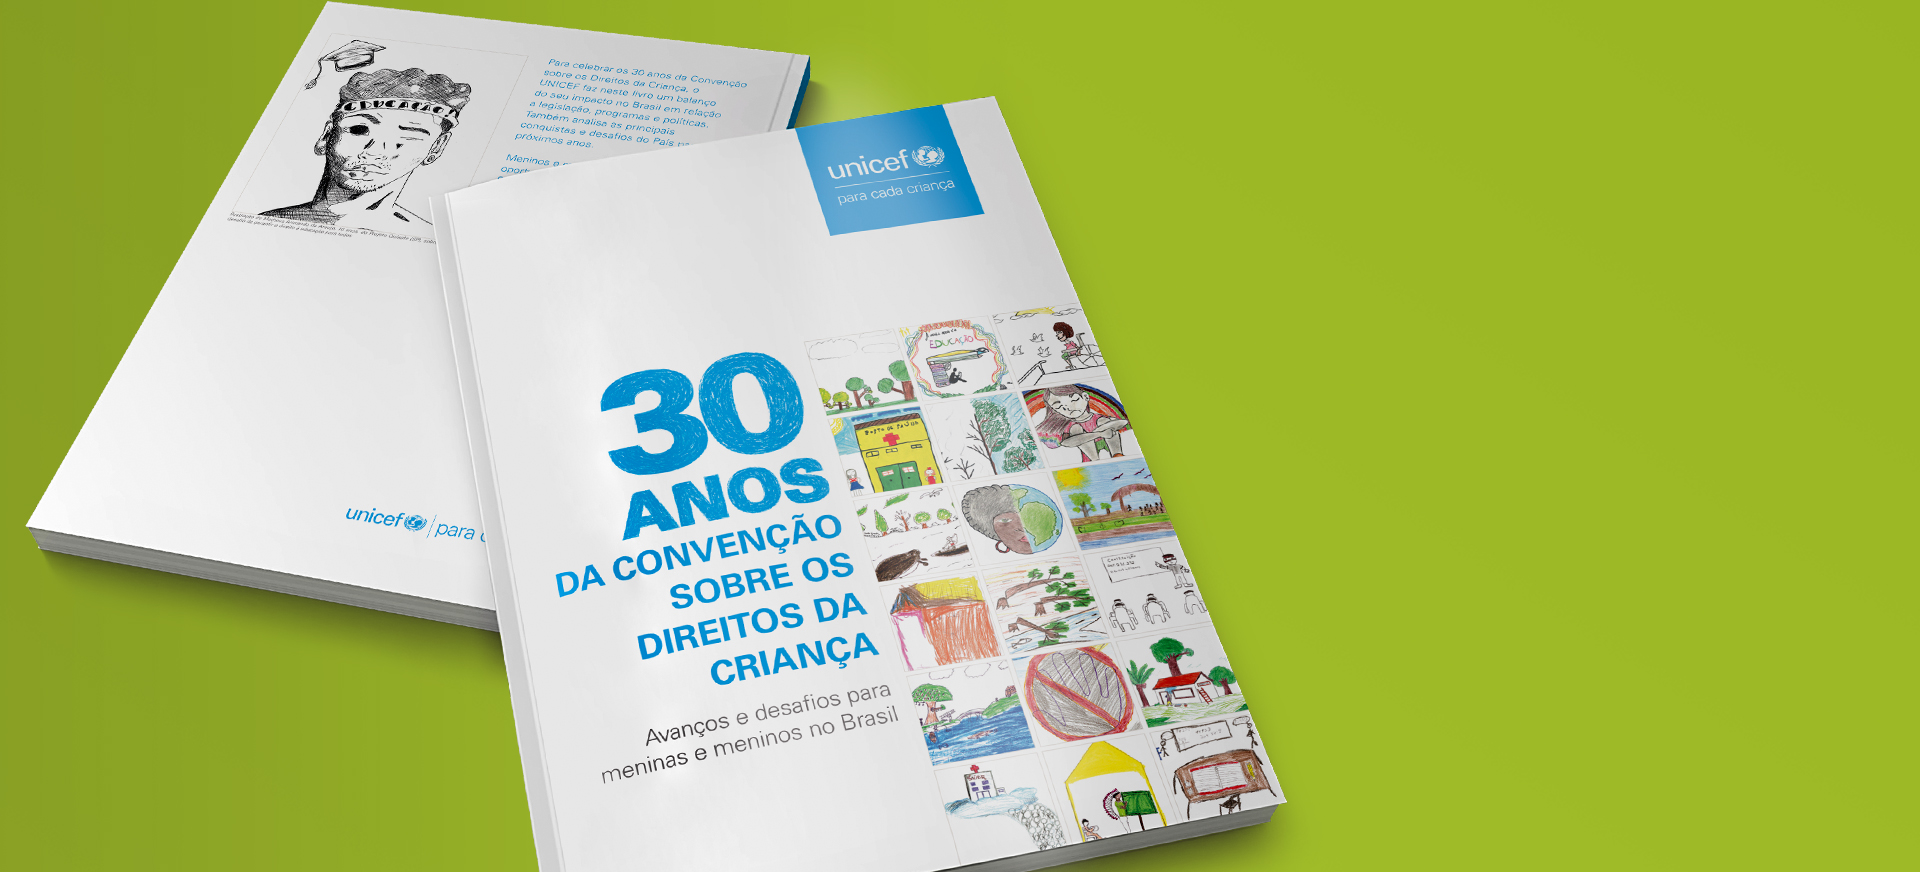 Capa do livro 30 anos da Convenção  sobre os Direitos da Criança – Avanços e desafios para meninas e meninos no Brasil